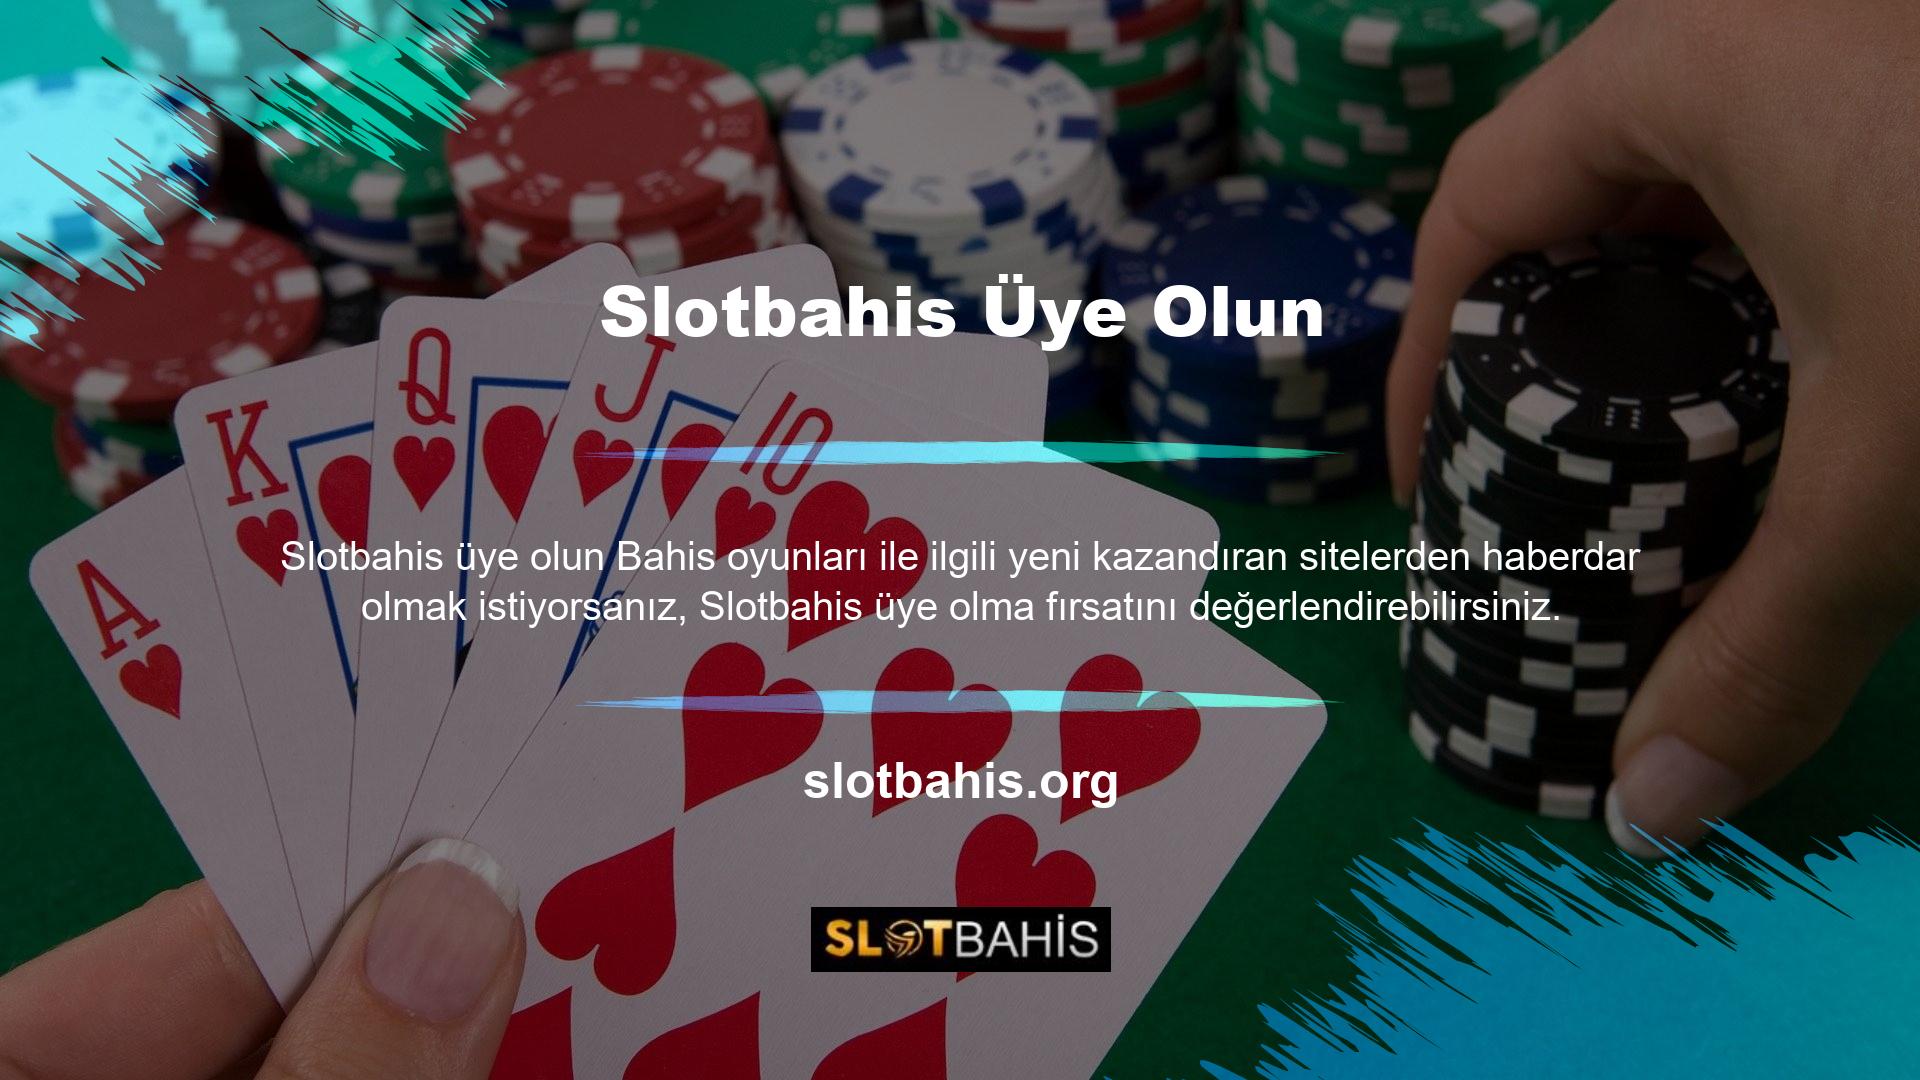 Slotbahis, uygun ve kârlı ticarete sahip kârlı bir web sitesidir